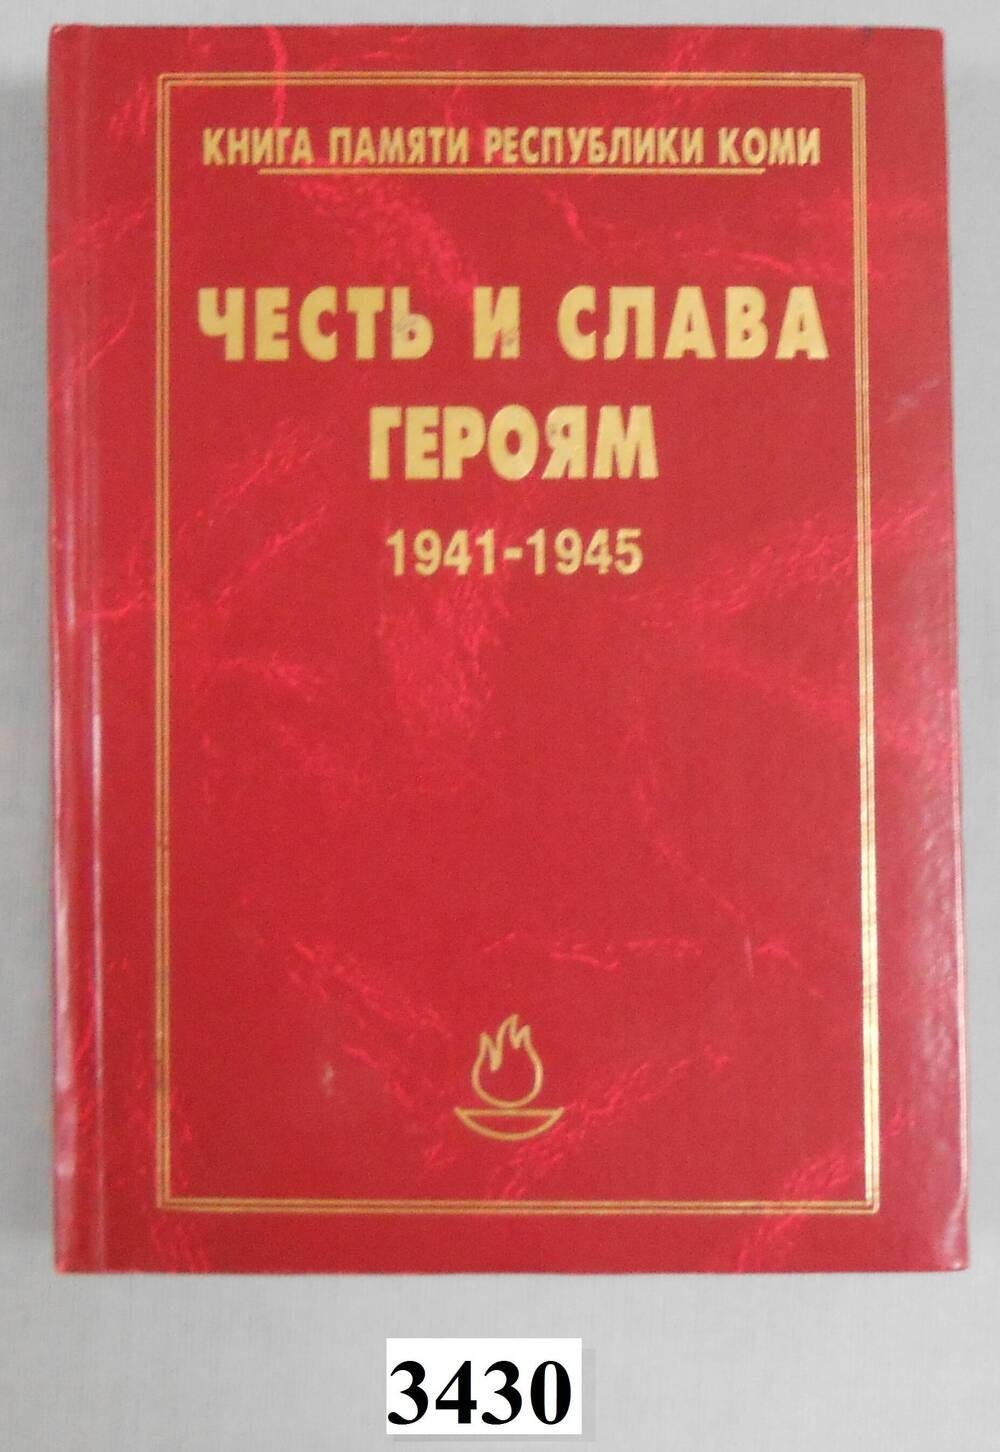 Книга печатная Честь и слава героям 1941-1945.